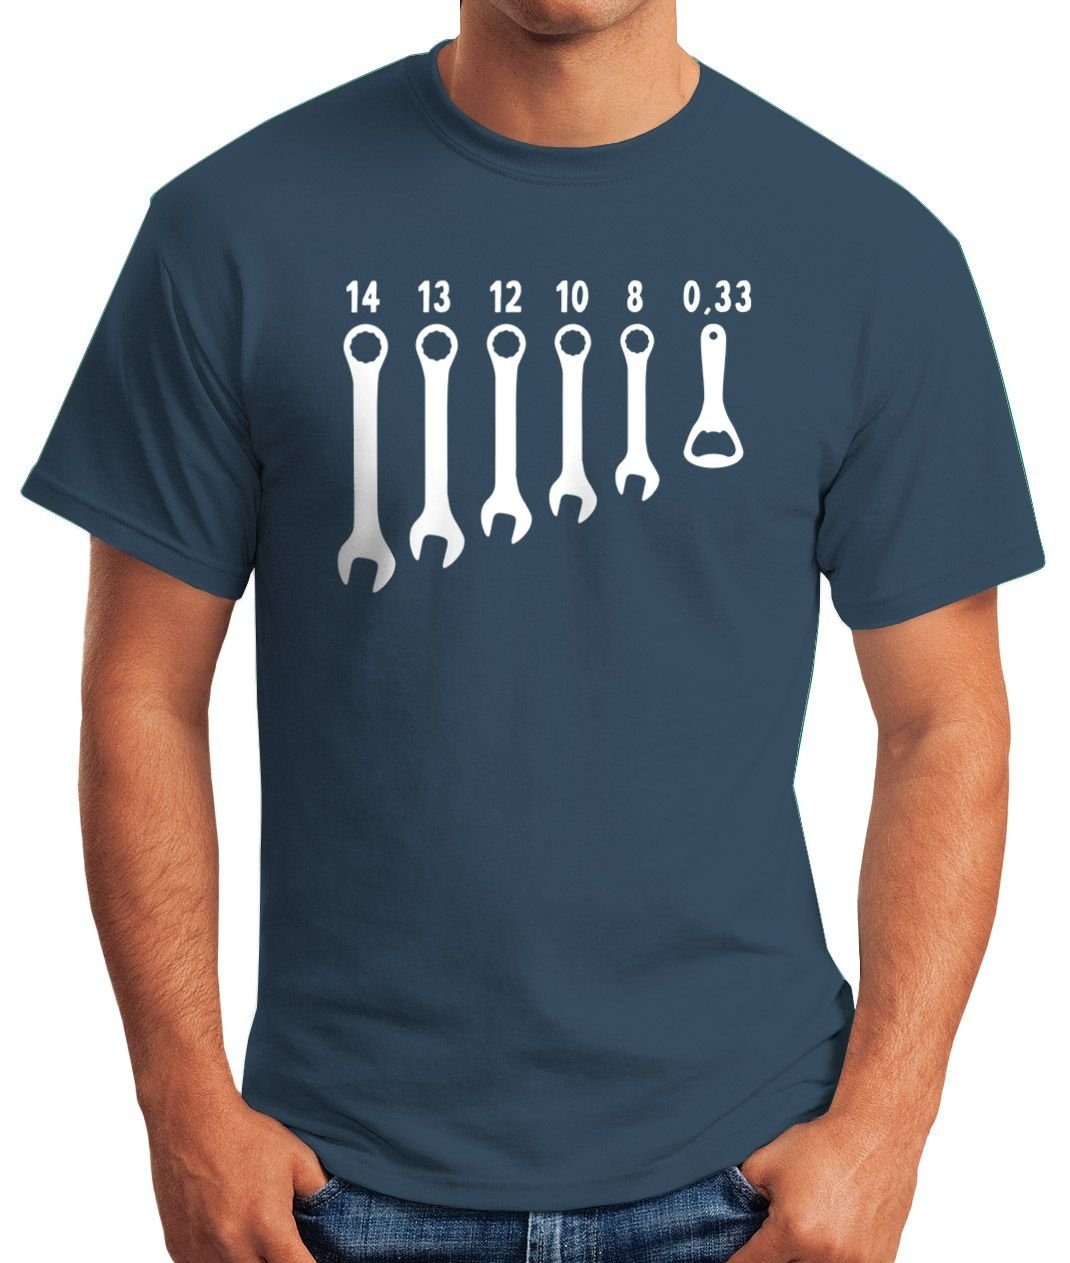 mit MoonWorks Herren Fun-Shirt Print-Shirt Schraubenschlüssel Print Fun-Shirt blau Moonworks® T-Shirt Herren Bieröffner Flaschenöffner